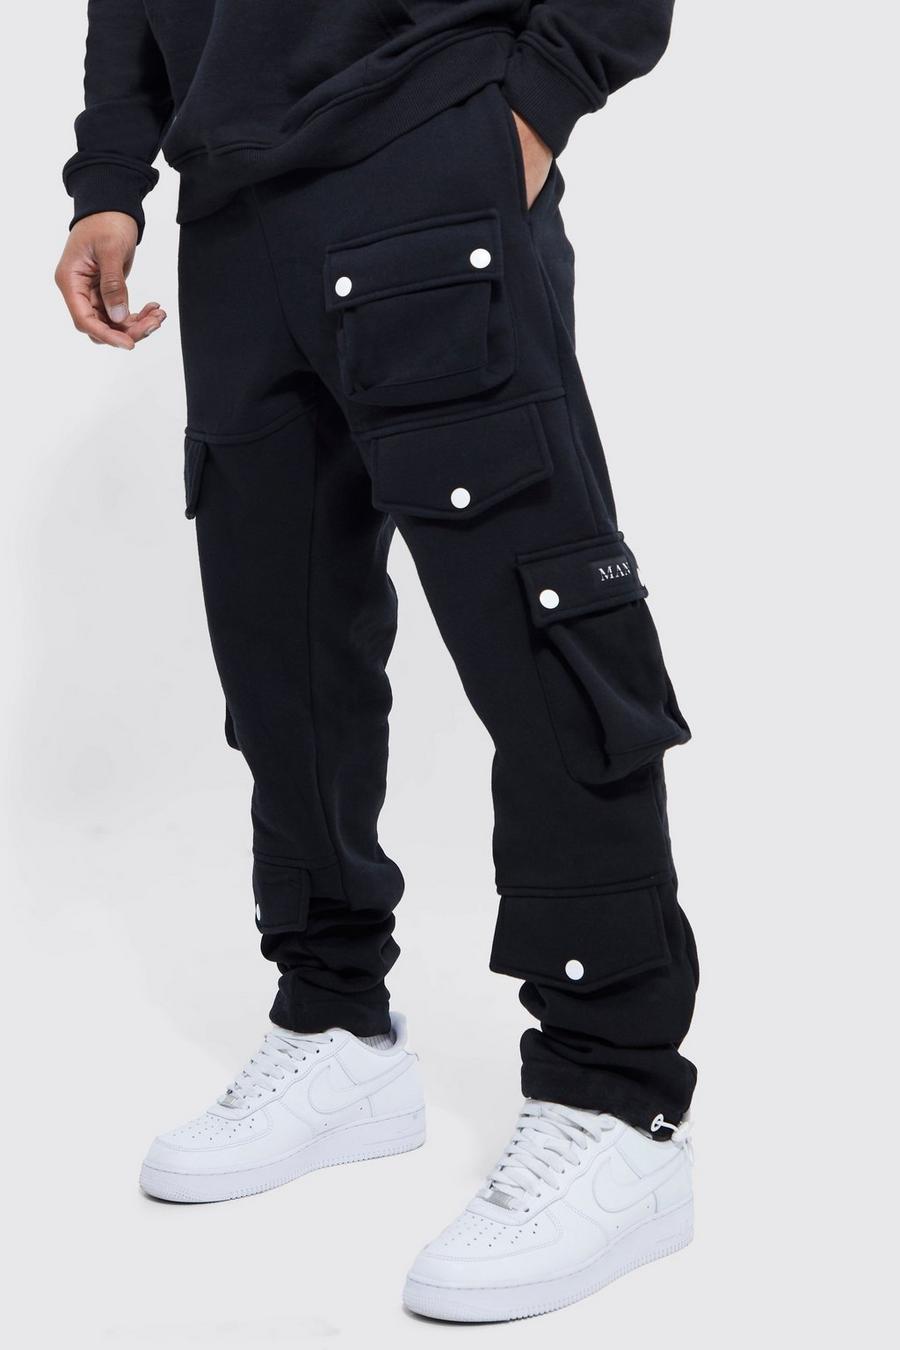 שחור negro מכנסי טרנינג דגמ"ח עם כיסים מרובים וחפתים לגברים גבוהים image number 1